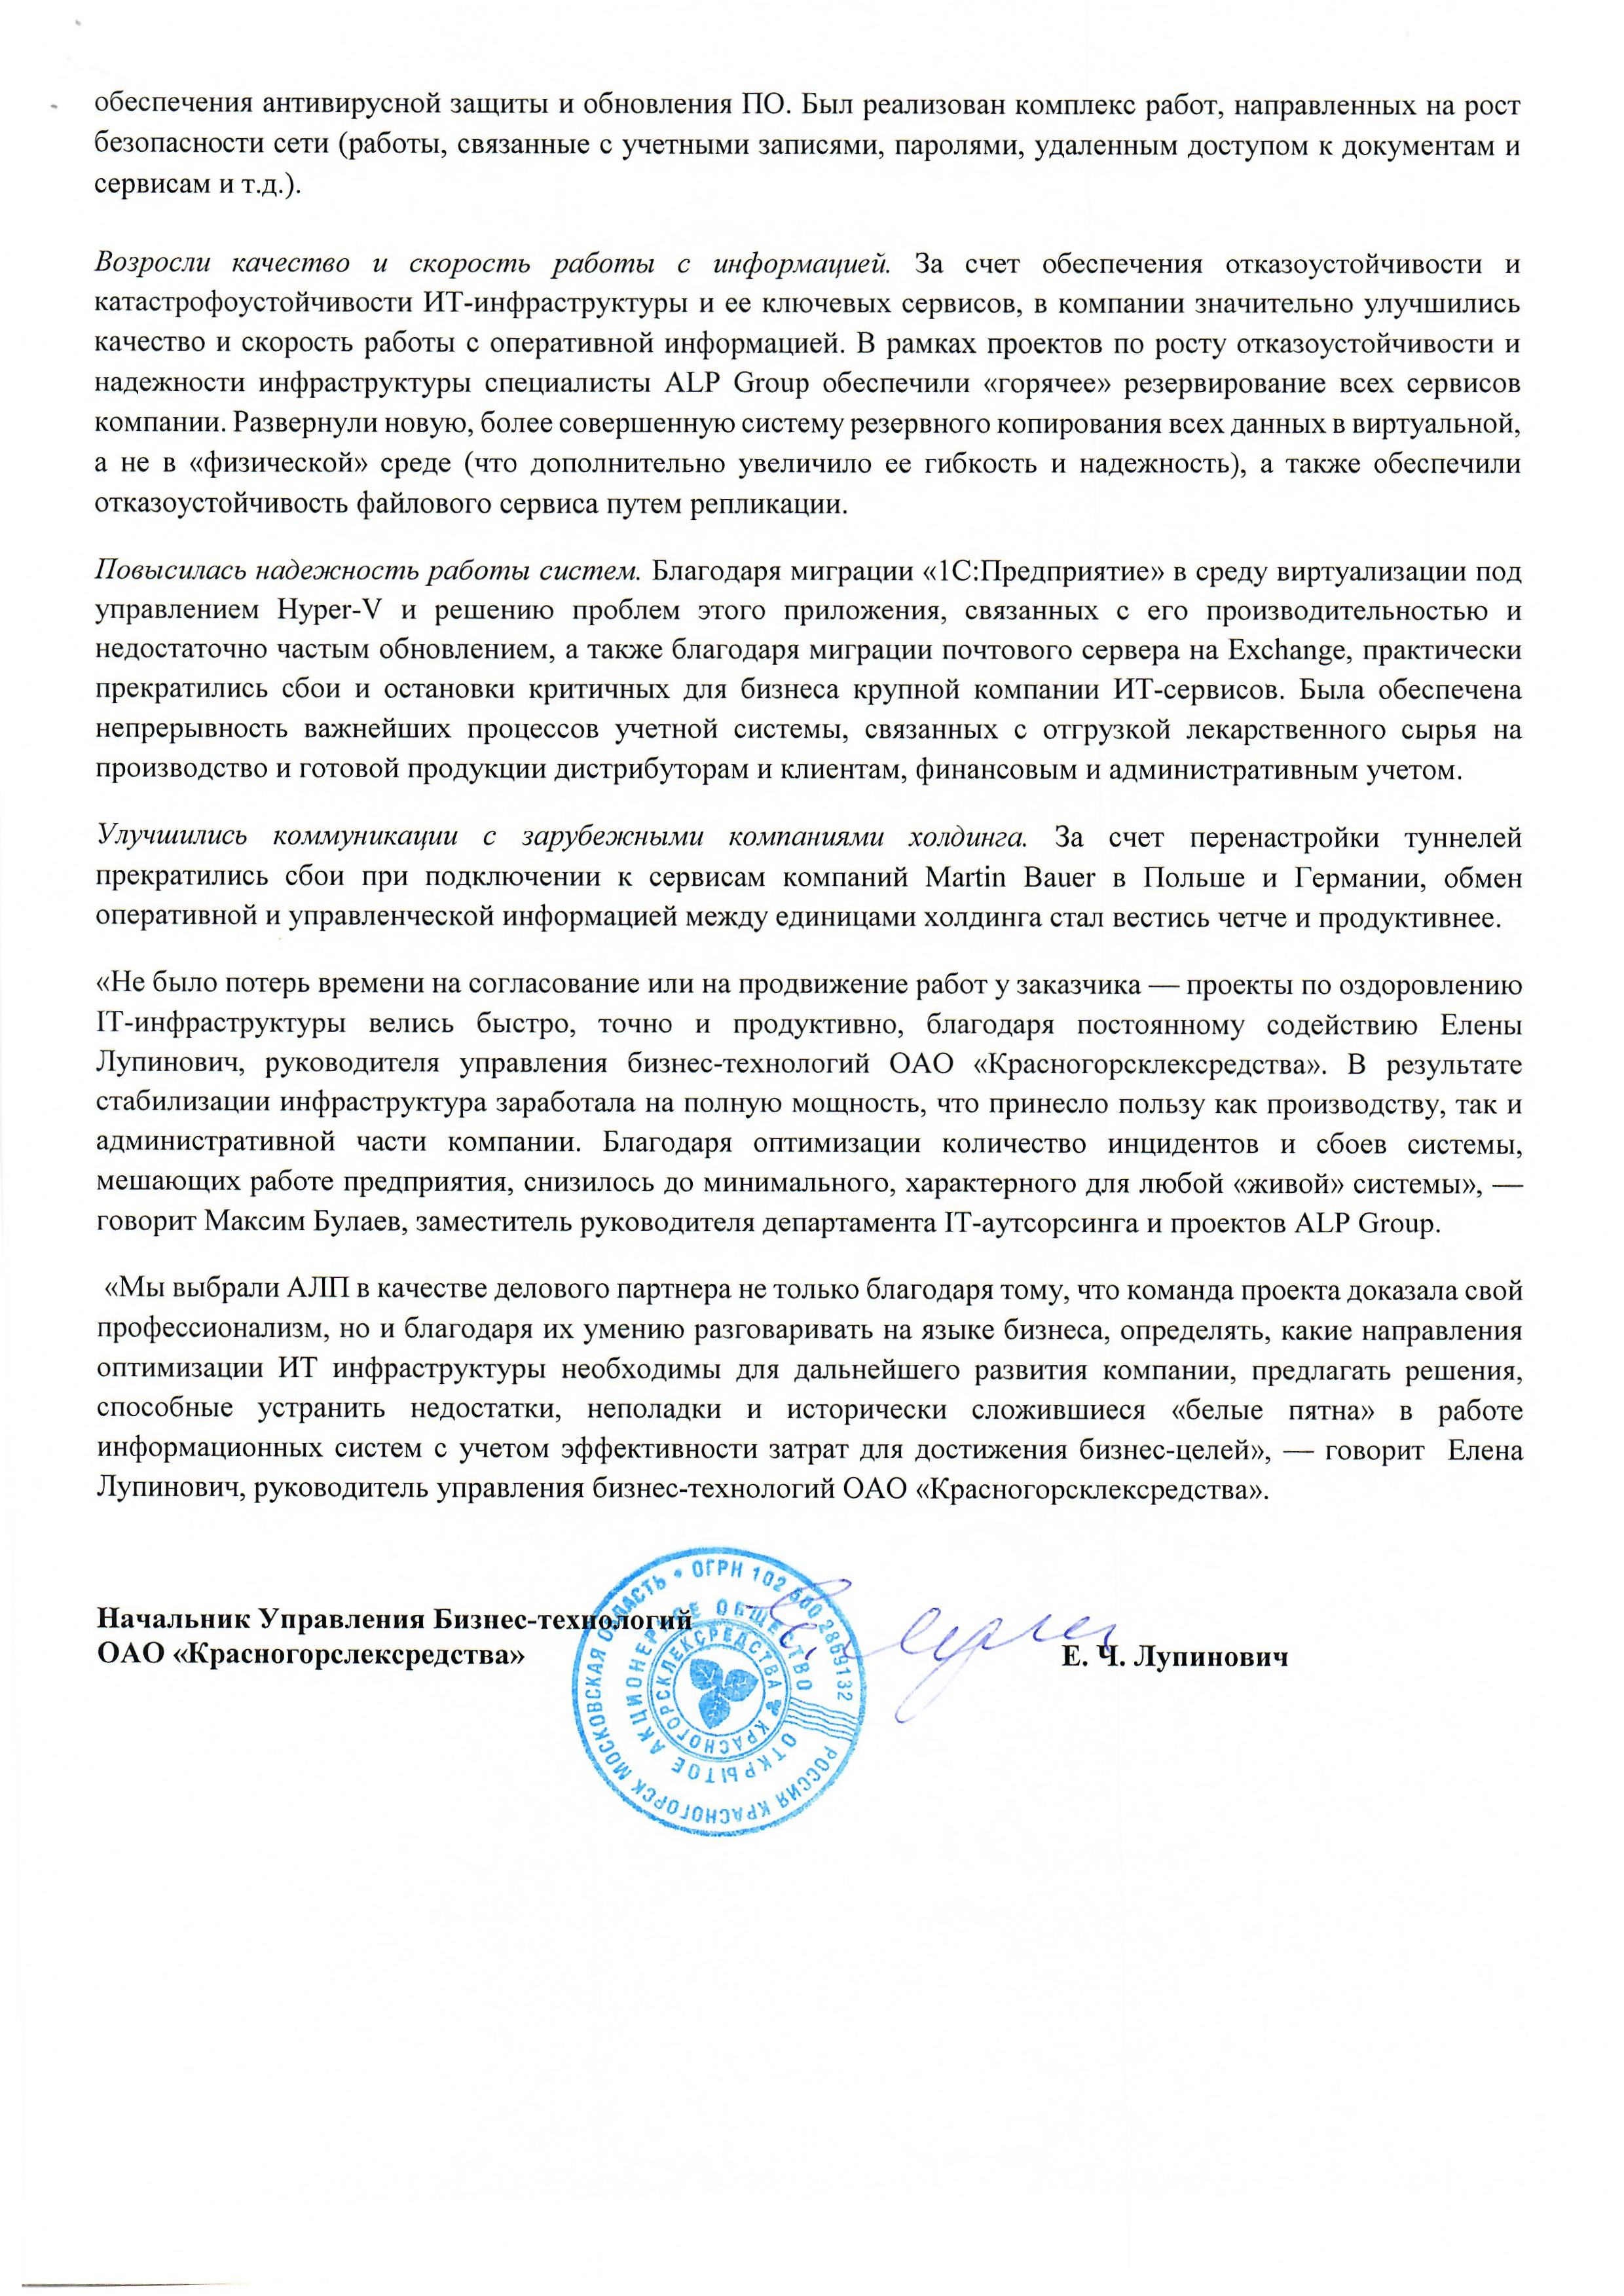 Стабилизация и поддержка работы IT-инфраструктуры ОАО «Красногорсклексредства» страница 2